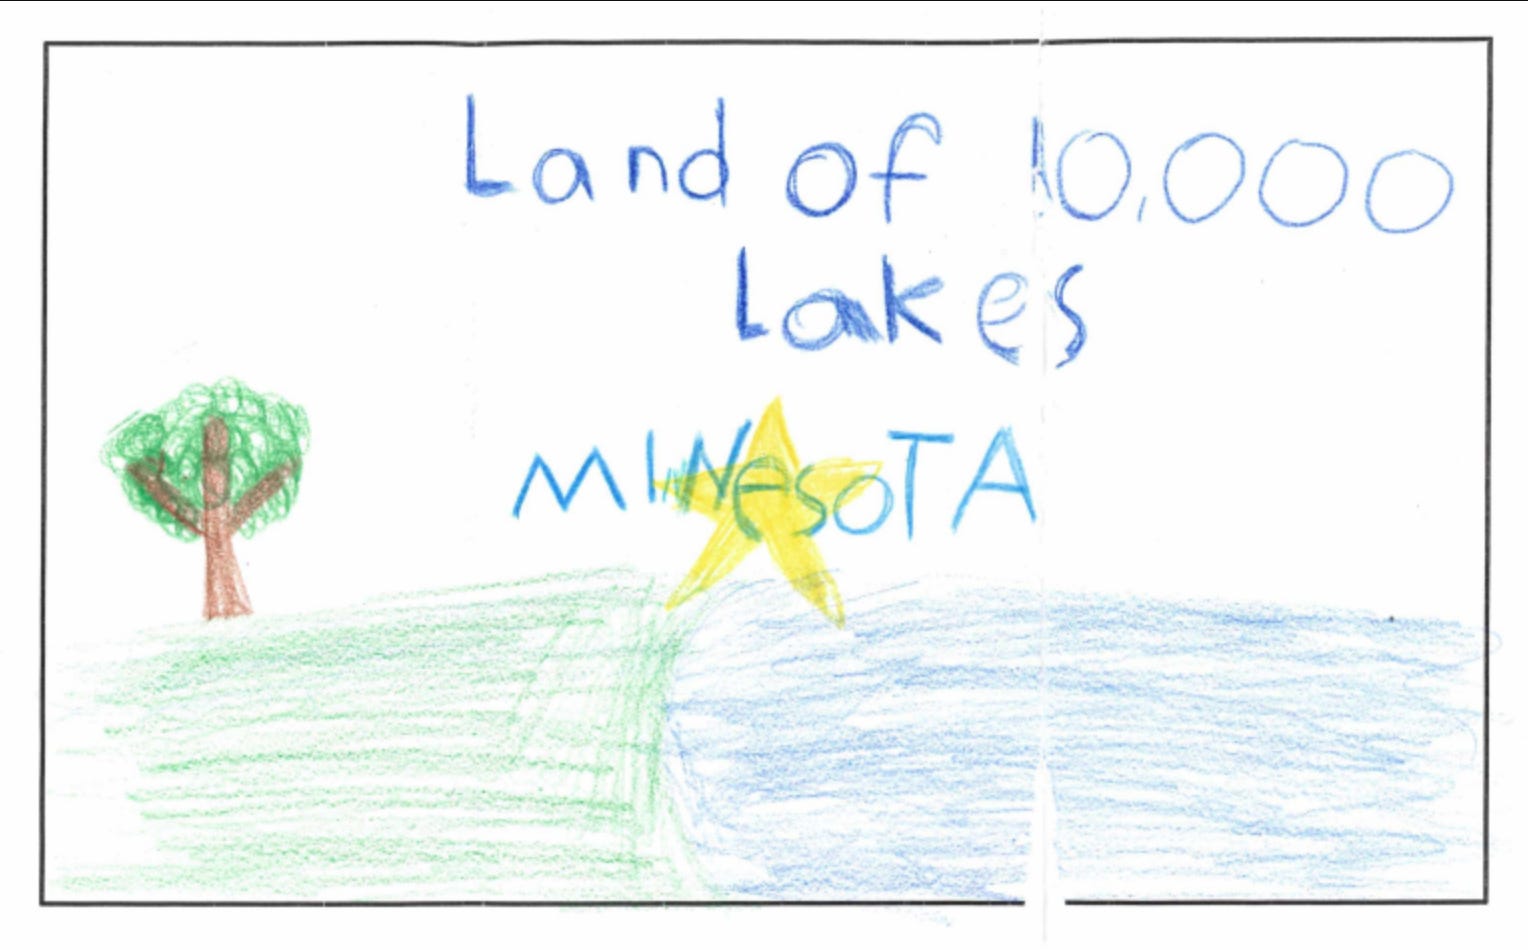 Eine weitere Einsendung, offenbar von einem Kind, zeigt einen See und einen Stern.